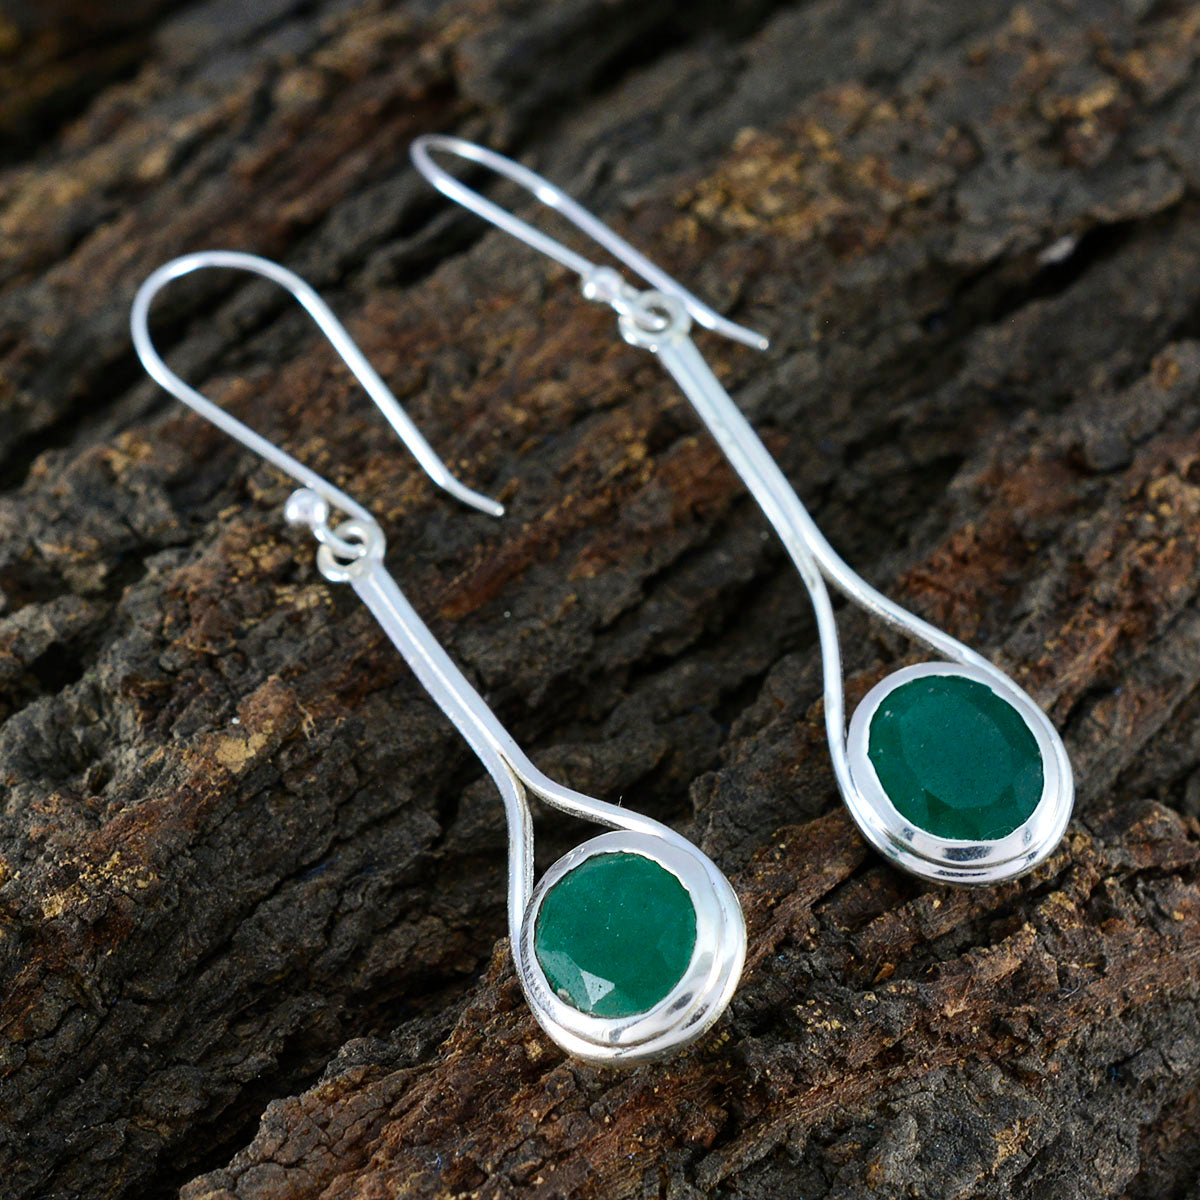 Riyo Easy On The Eye 925 Sterling Silber Ohrring für Damen, indischer Smaragd-Ohrring, Lünettenfassung, grüner Ohrring, baumelnder Ohrring